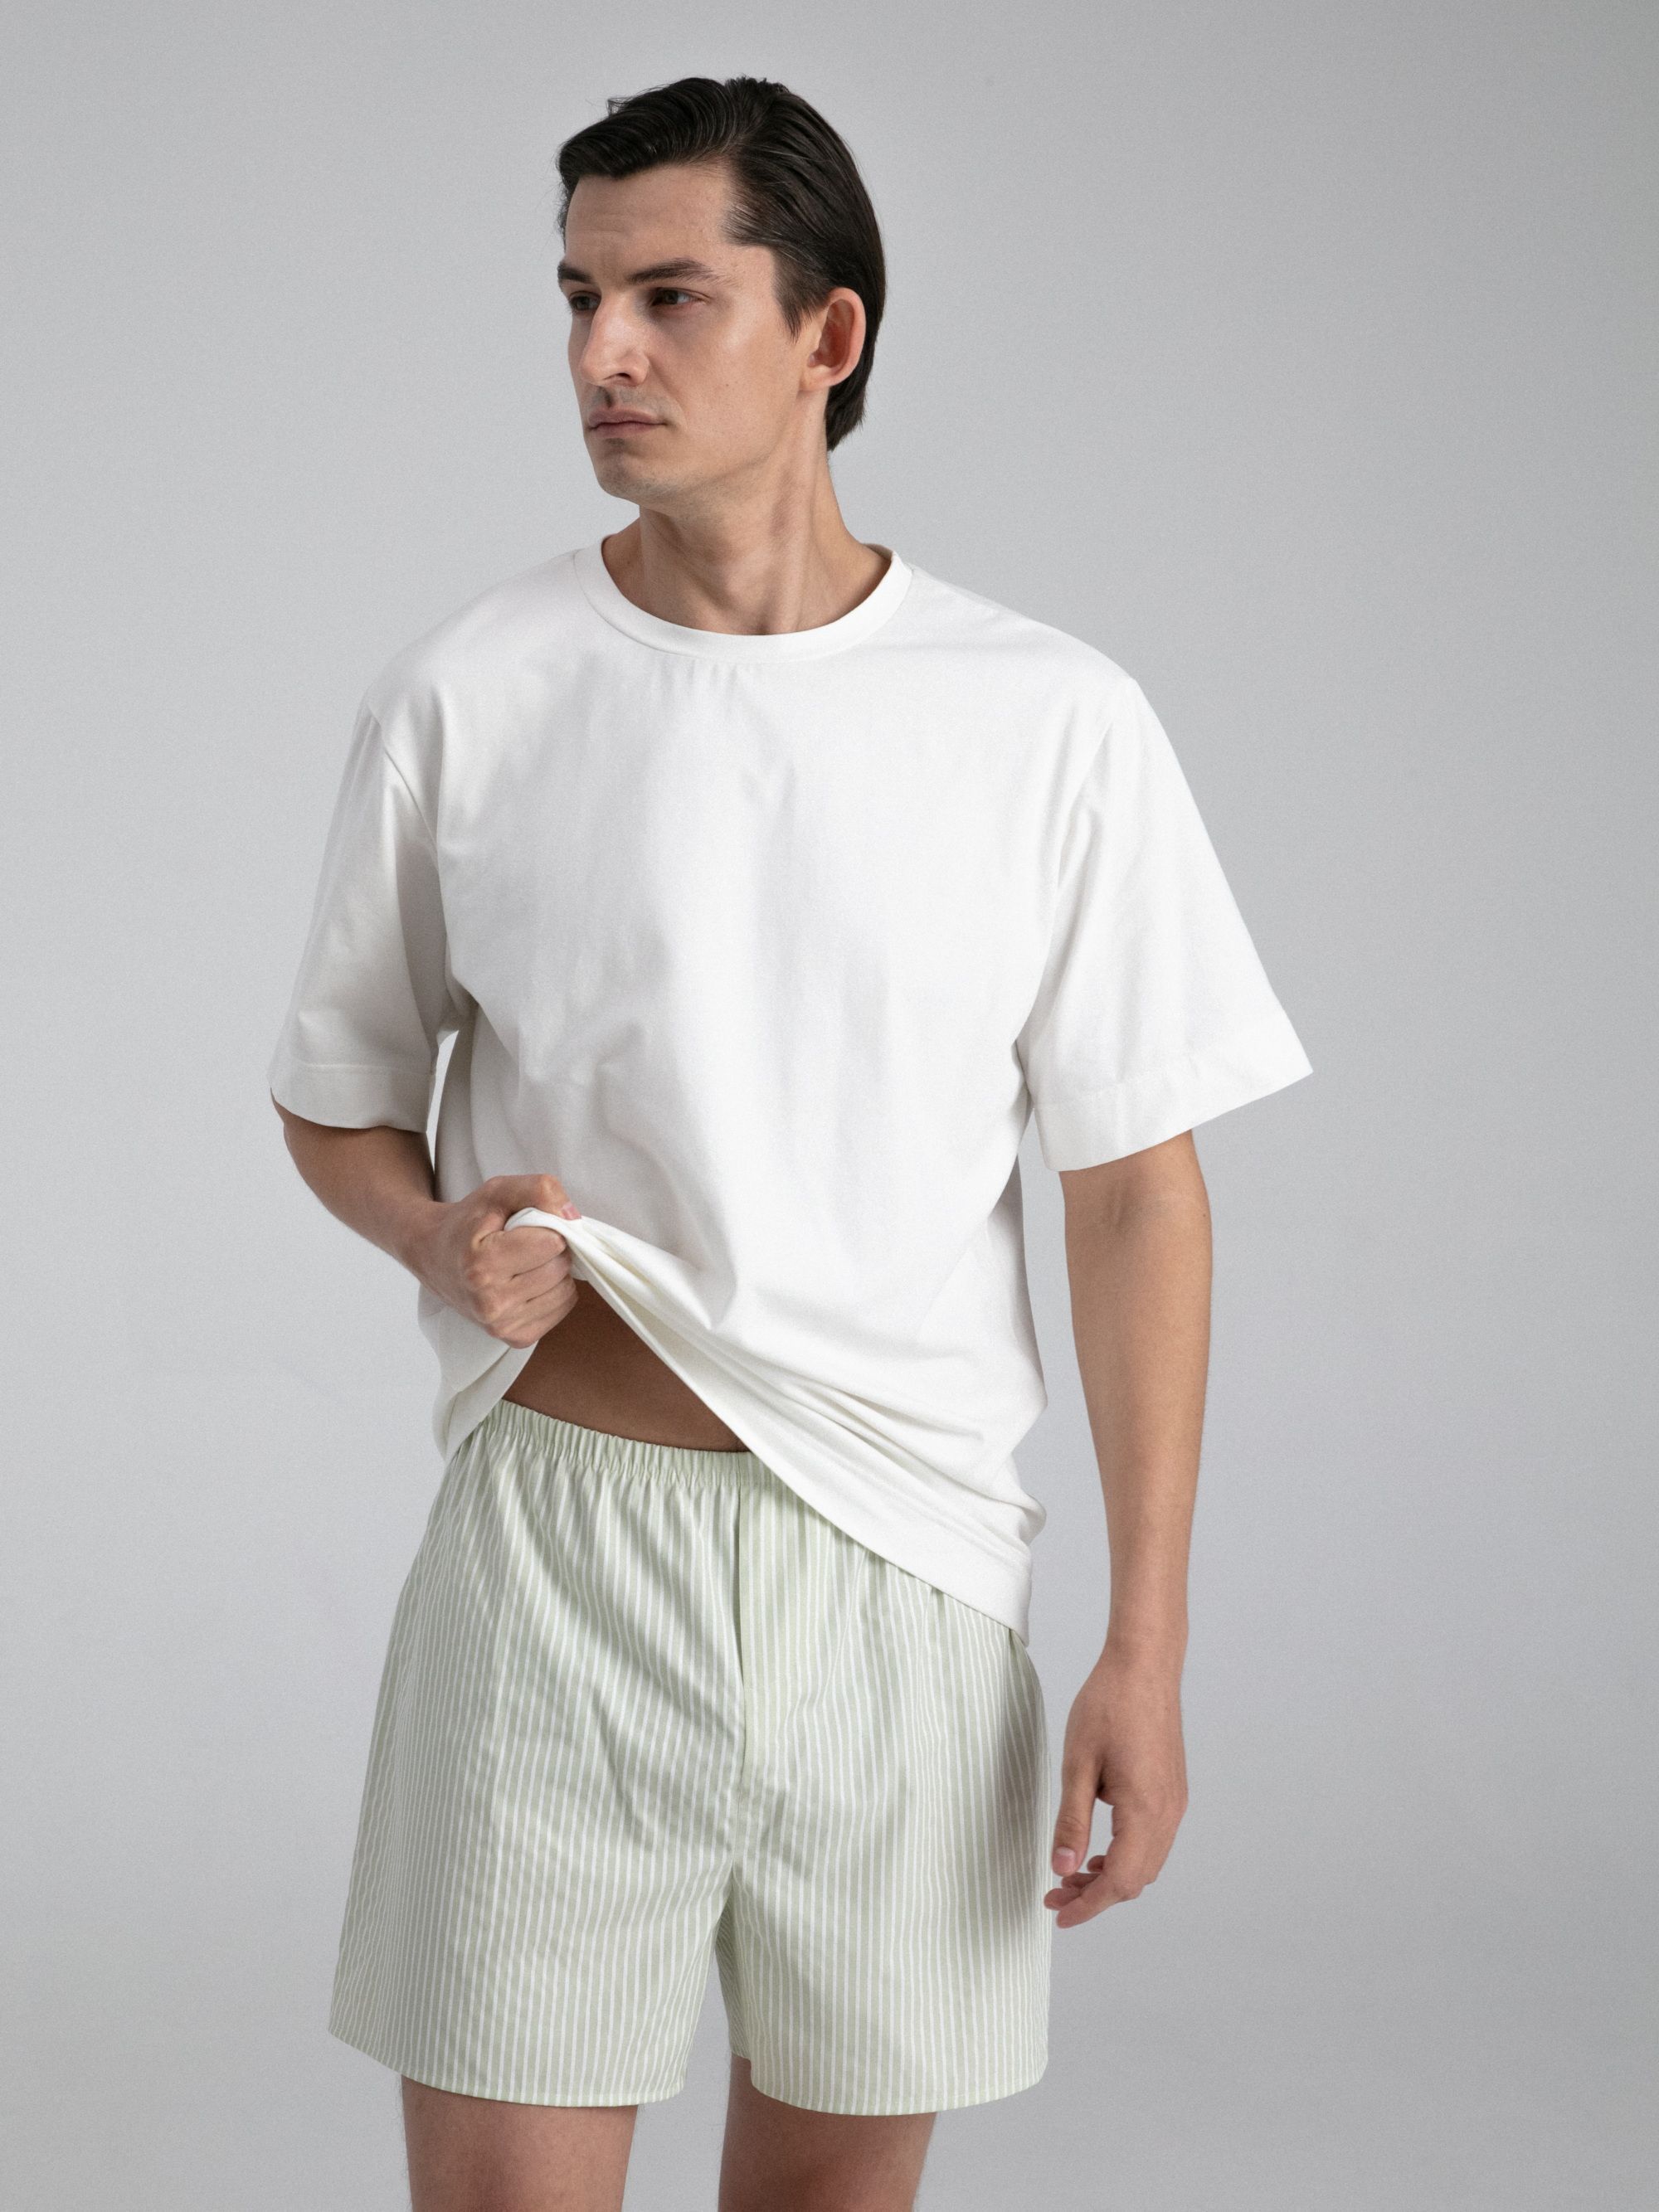 Briefs-shorts, pattern №994